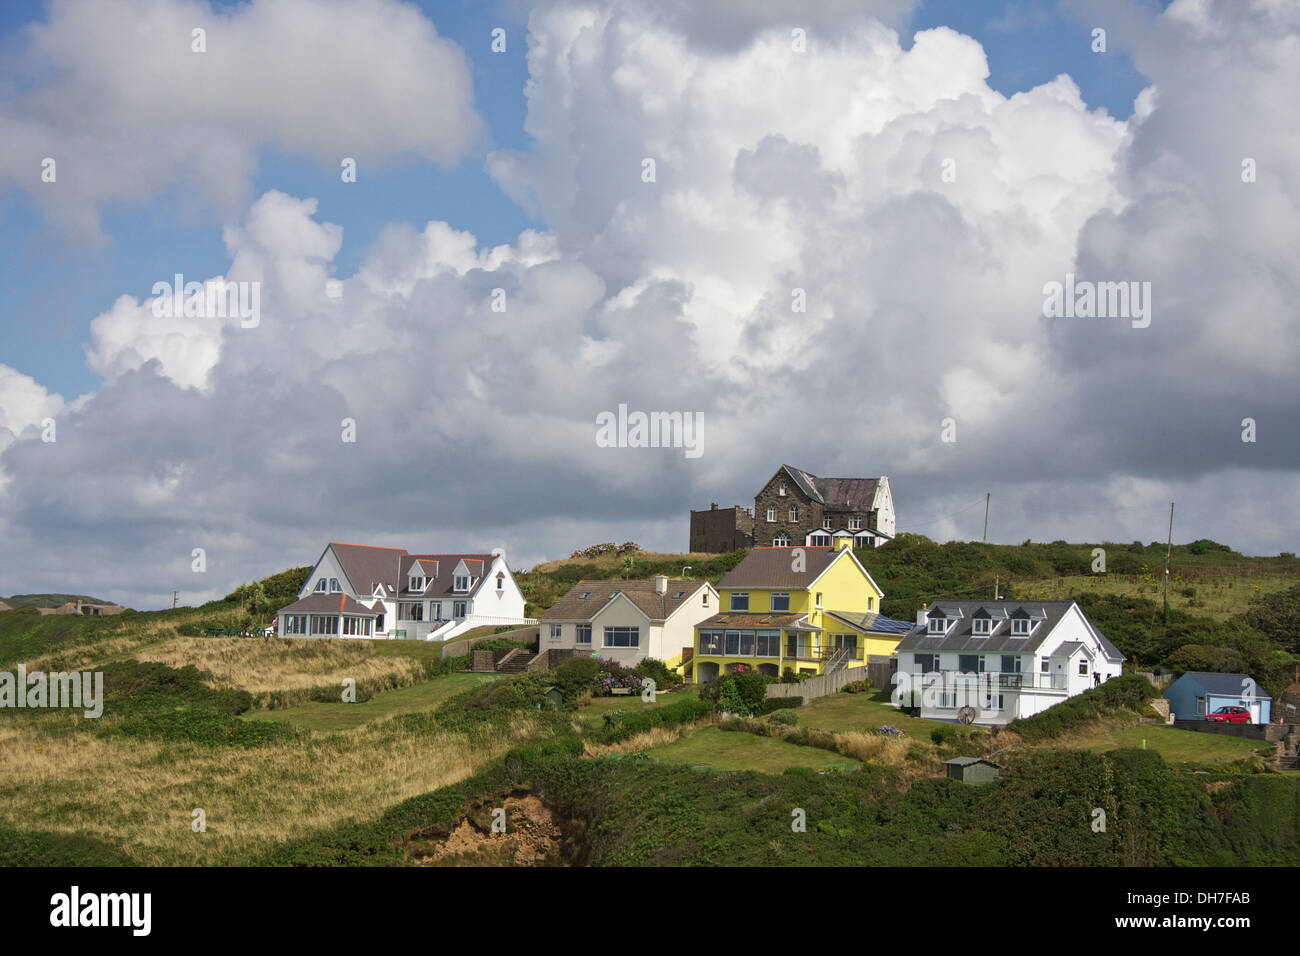 Dramatischen Wolkenformationen über dem walisischen Dorf befindet sich auf einem Hügel. Stockfoto